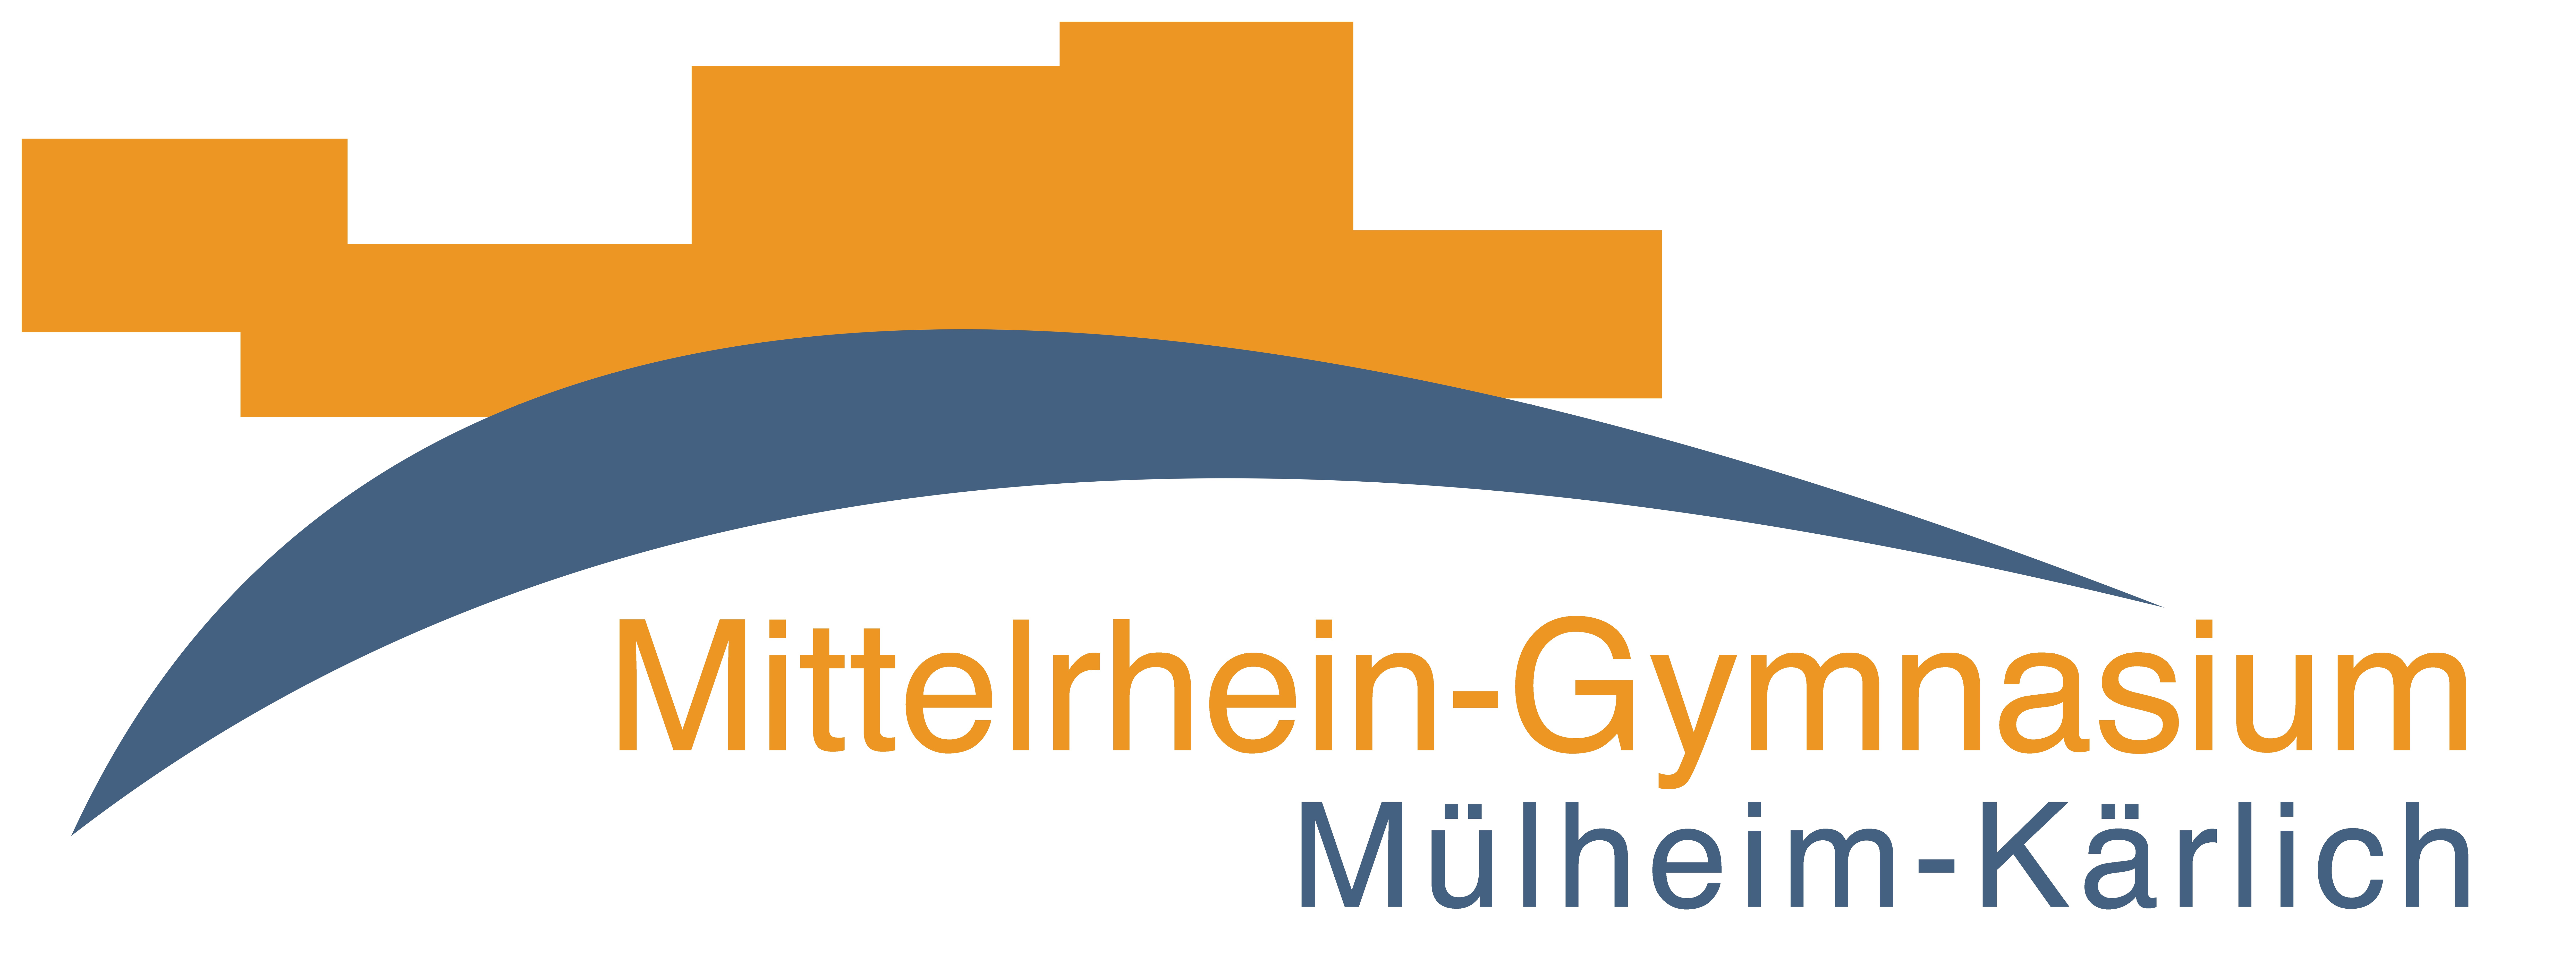 Mittelrhein-Gymnasium